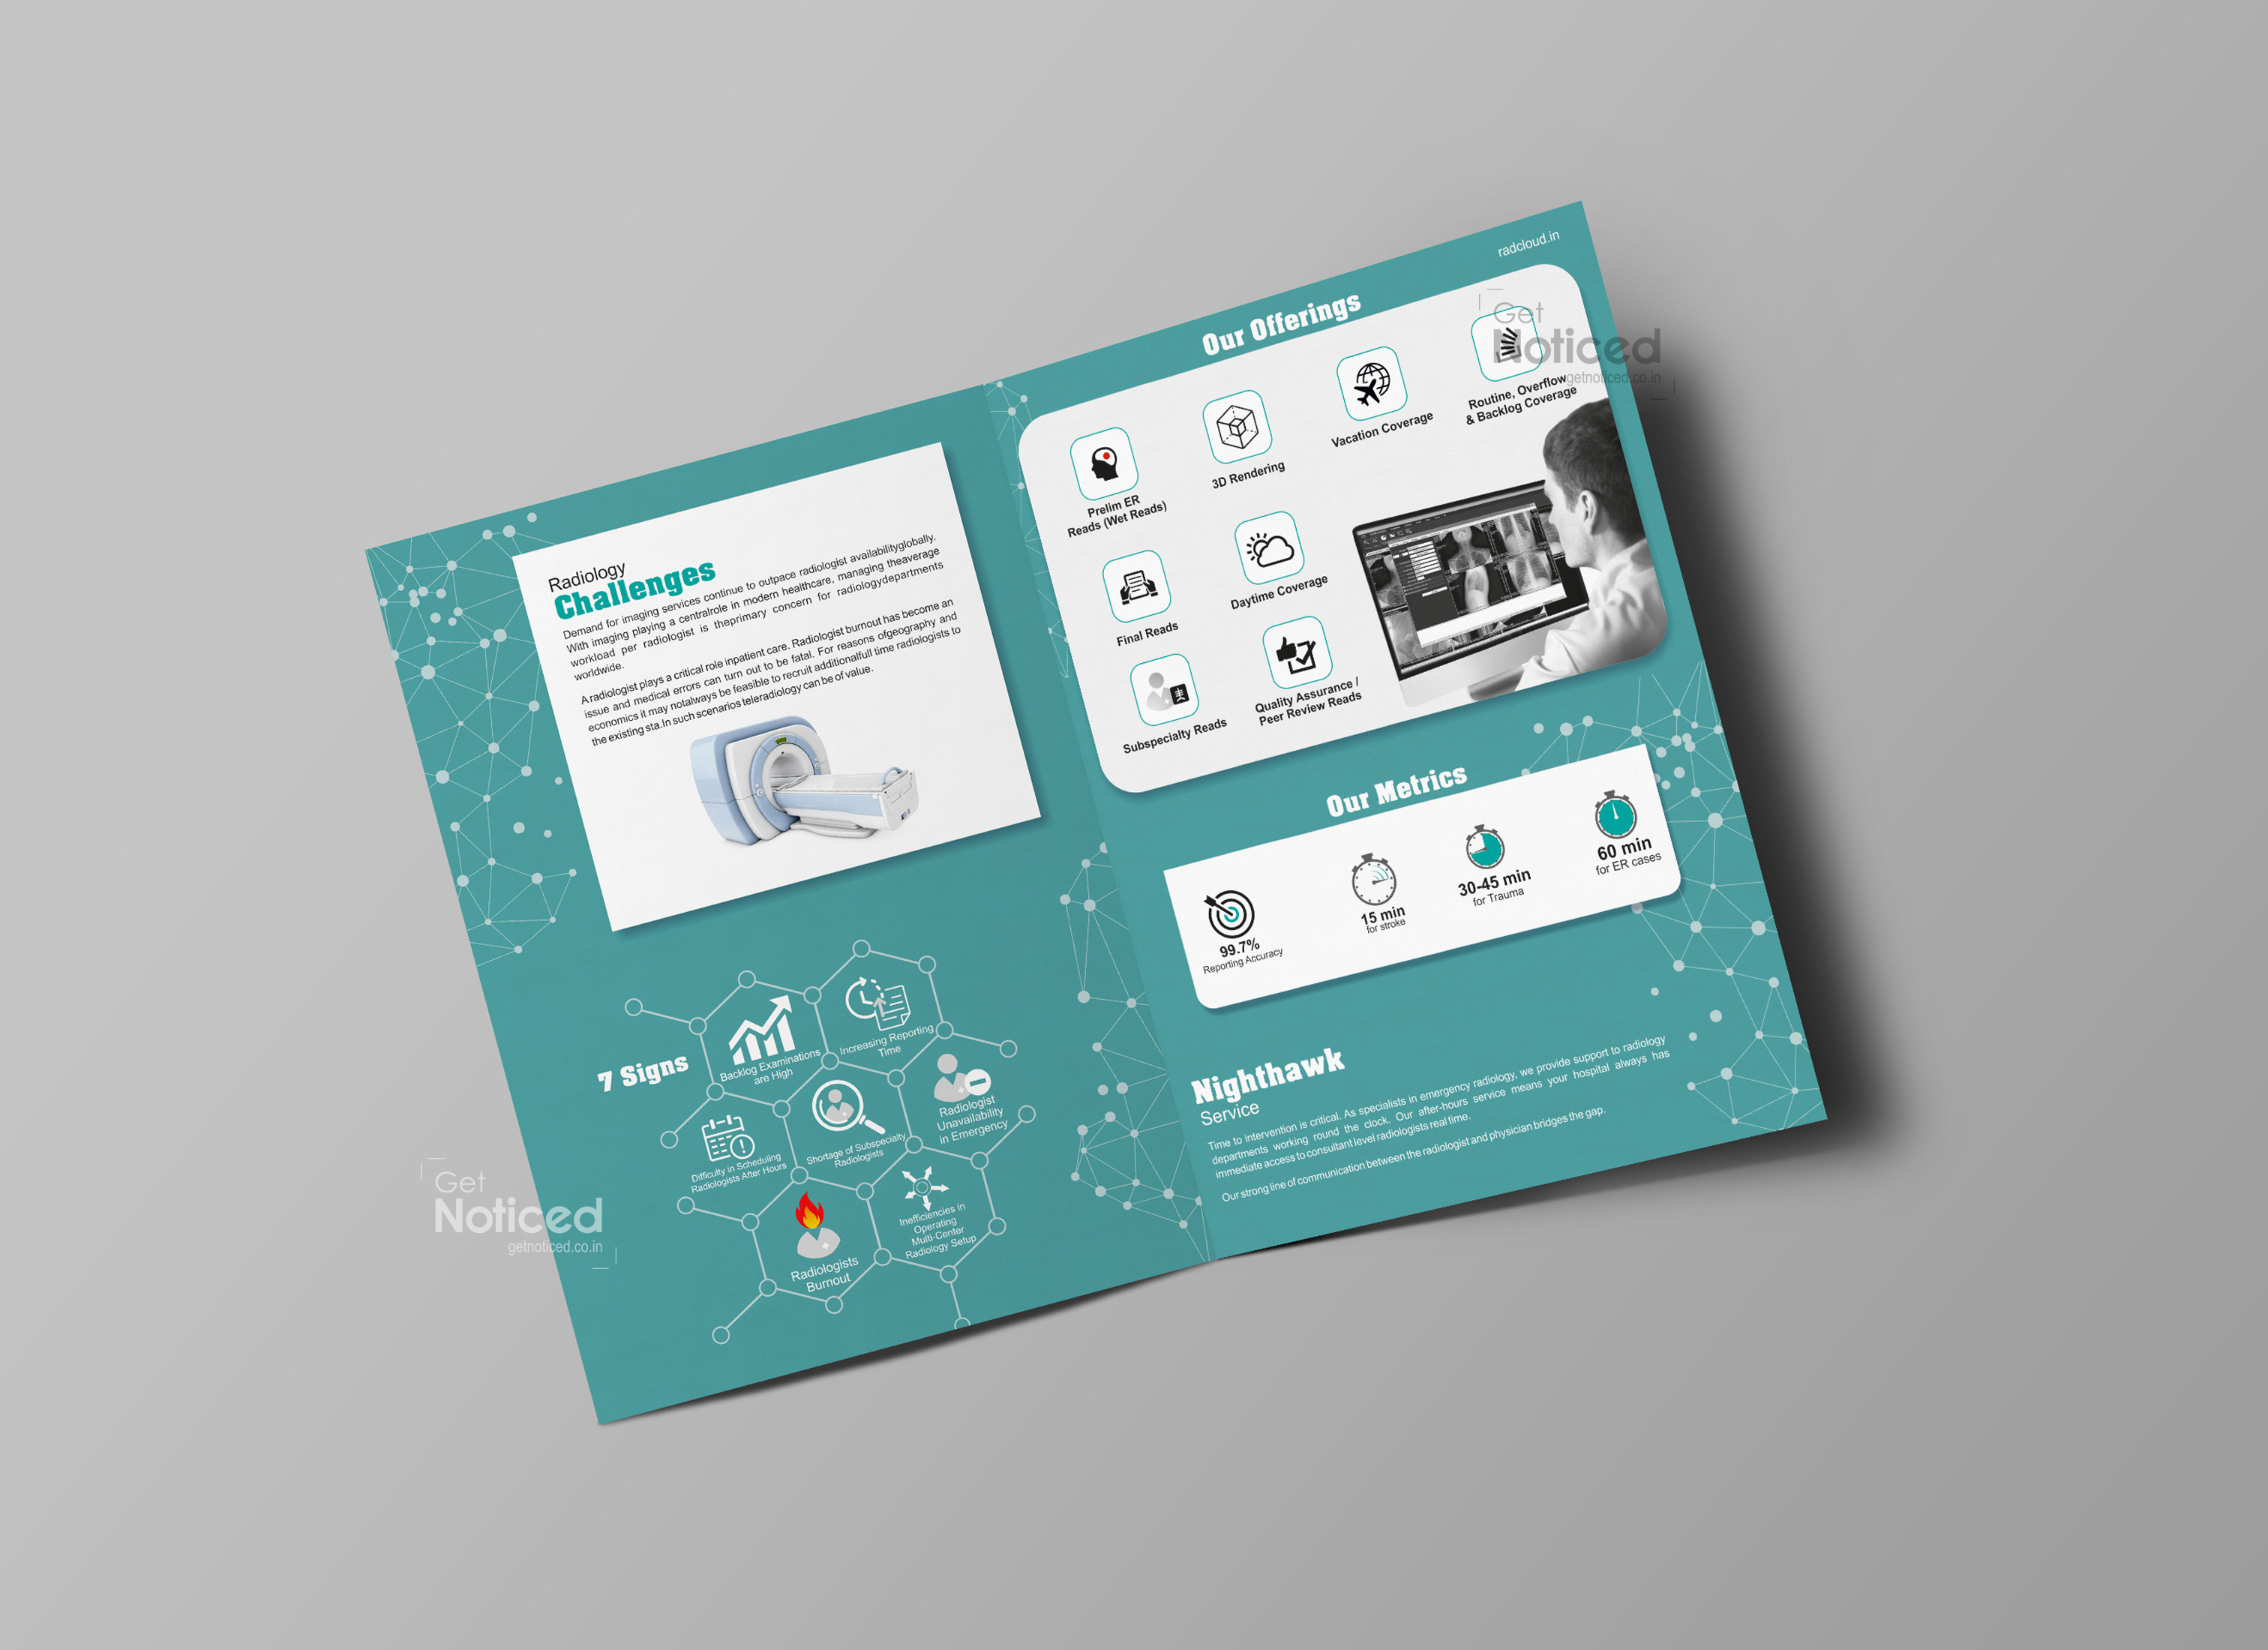 Radcloud Corporate Profile Brochure Design